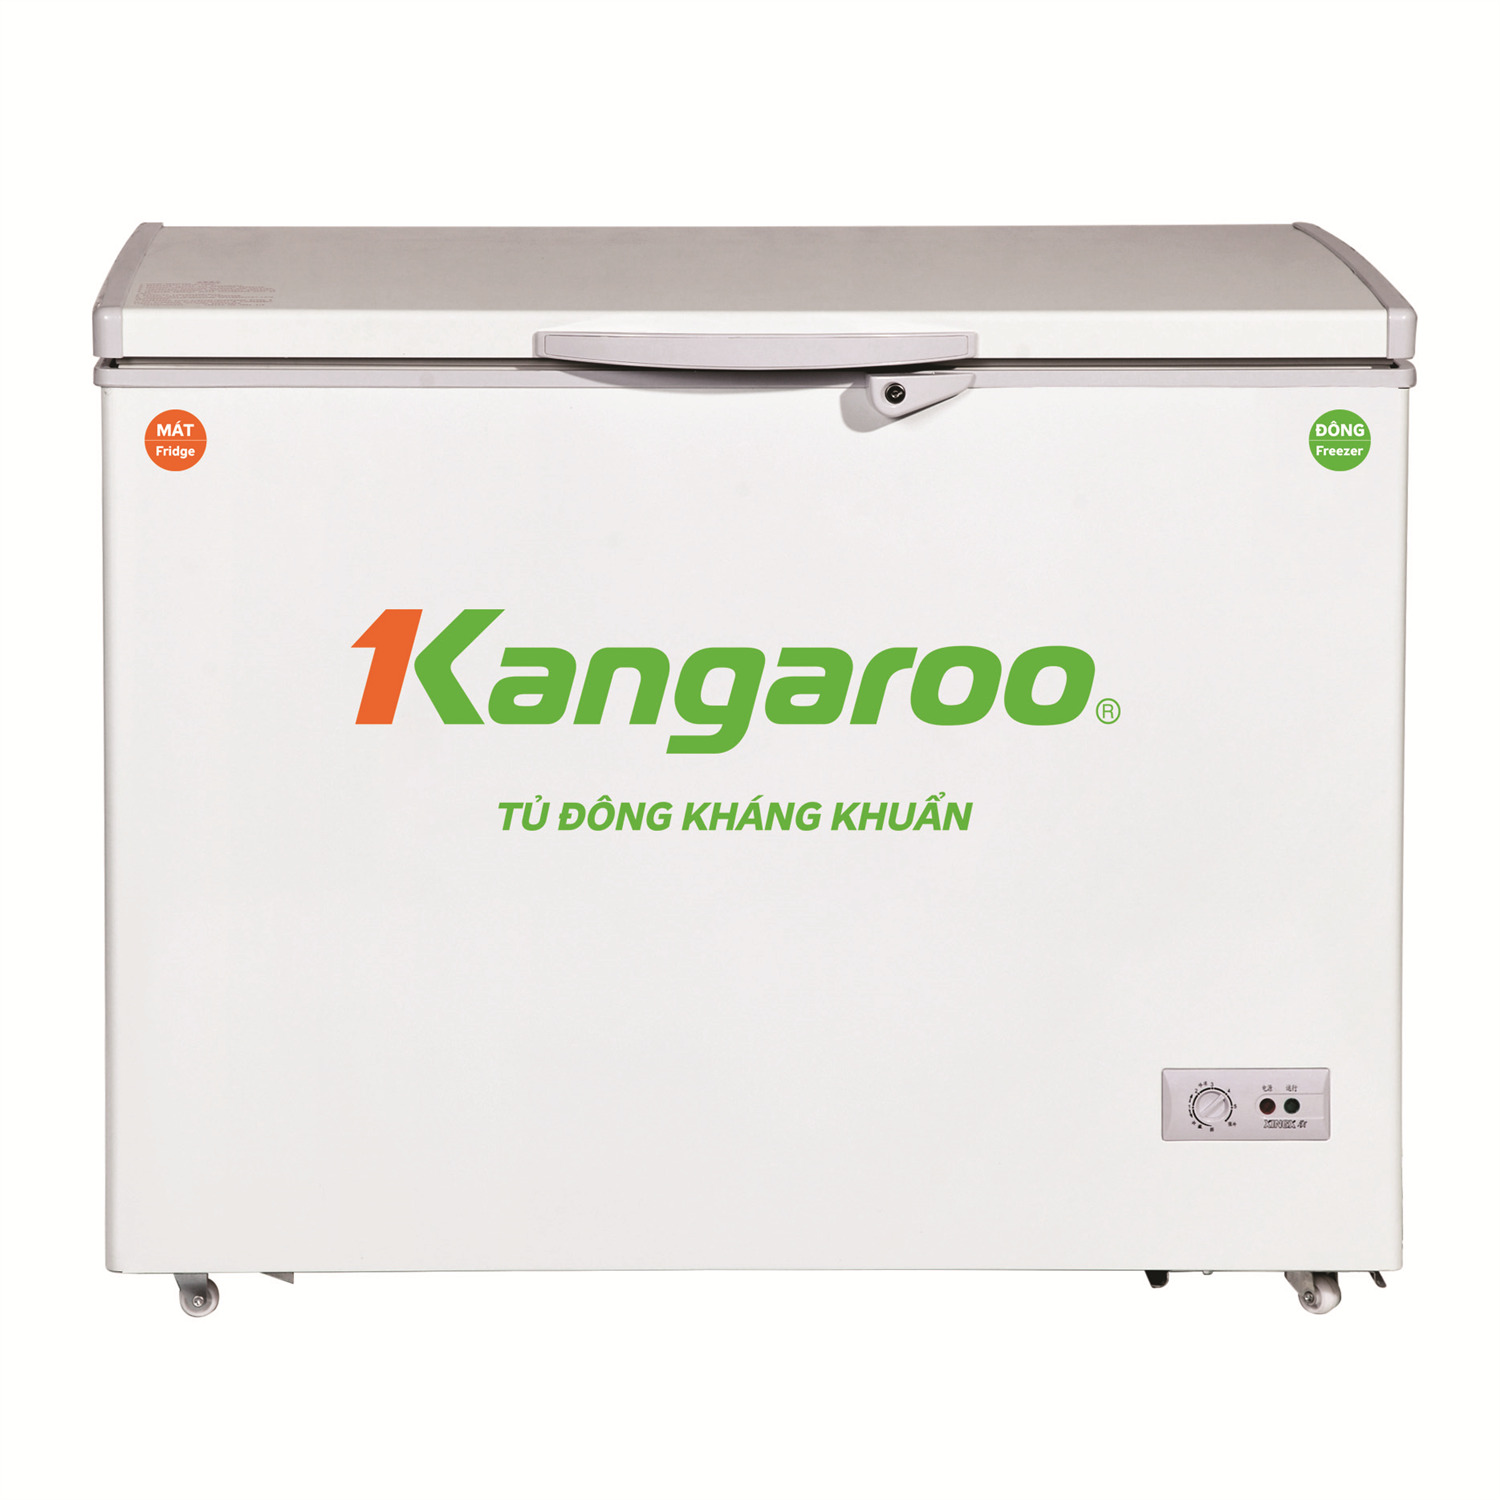 Tủ đông Kangaroo 1 ngăn 235 lít KG235C1